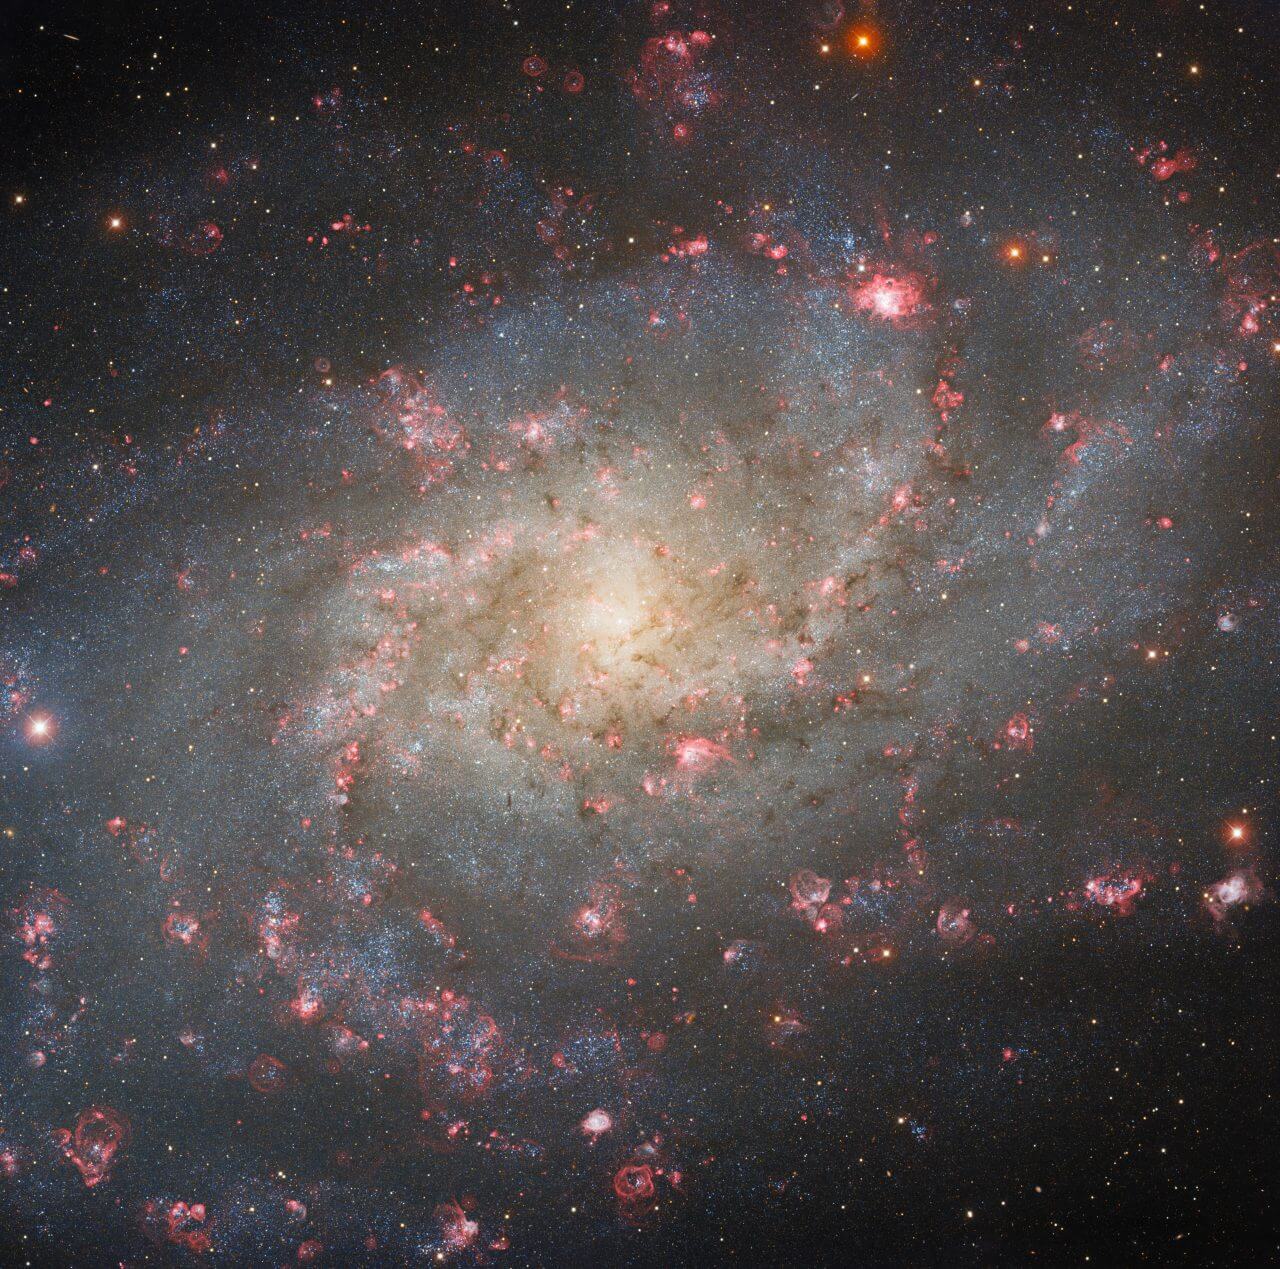 天の川銀河のご近所さん。300万光年先の渦巻銀河「さんかく座銀河